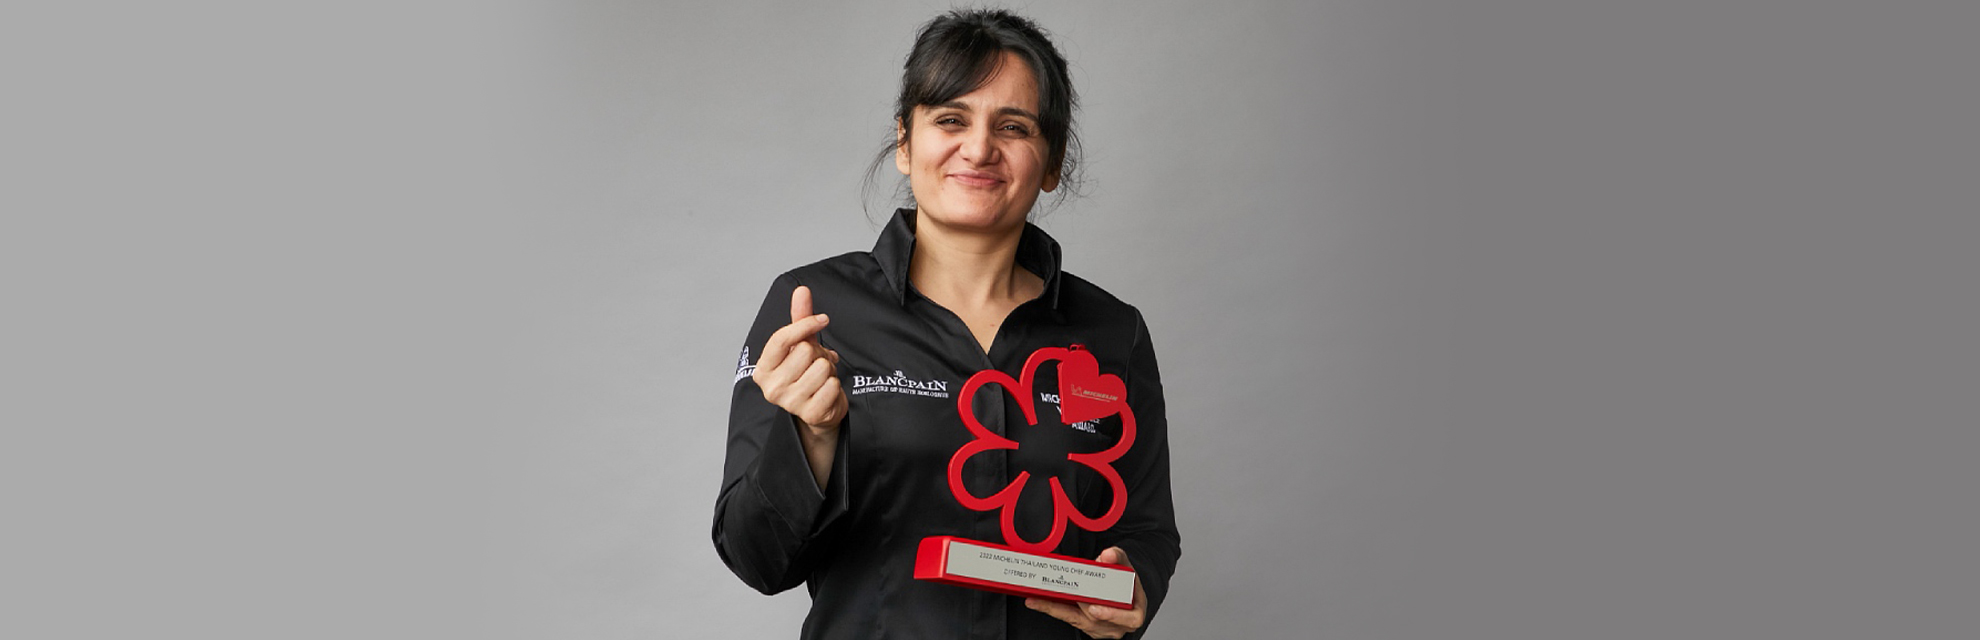 Garima Arora: Nữ đầu bếp sao Michelin đầu tiên của Ấn Độ